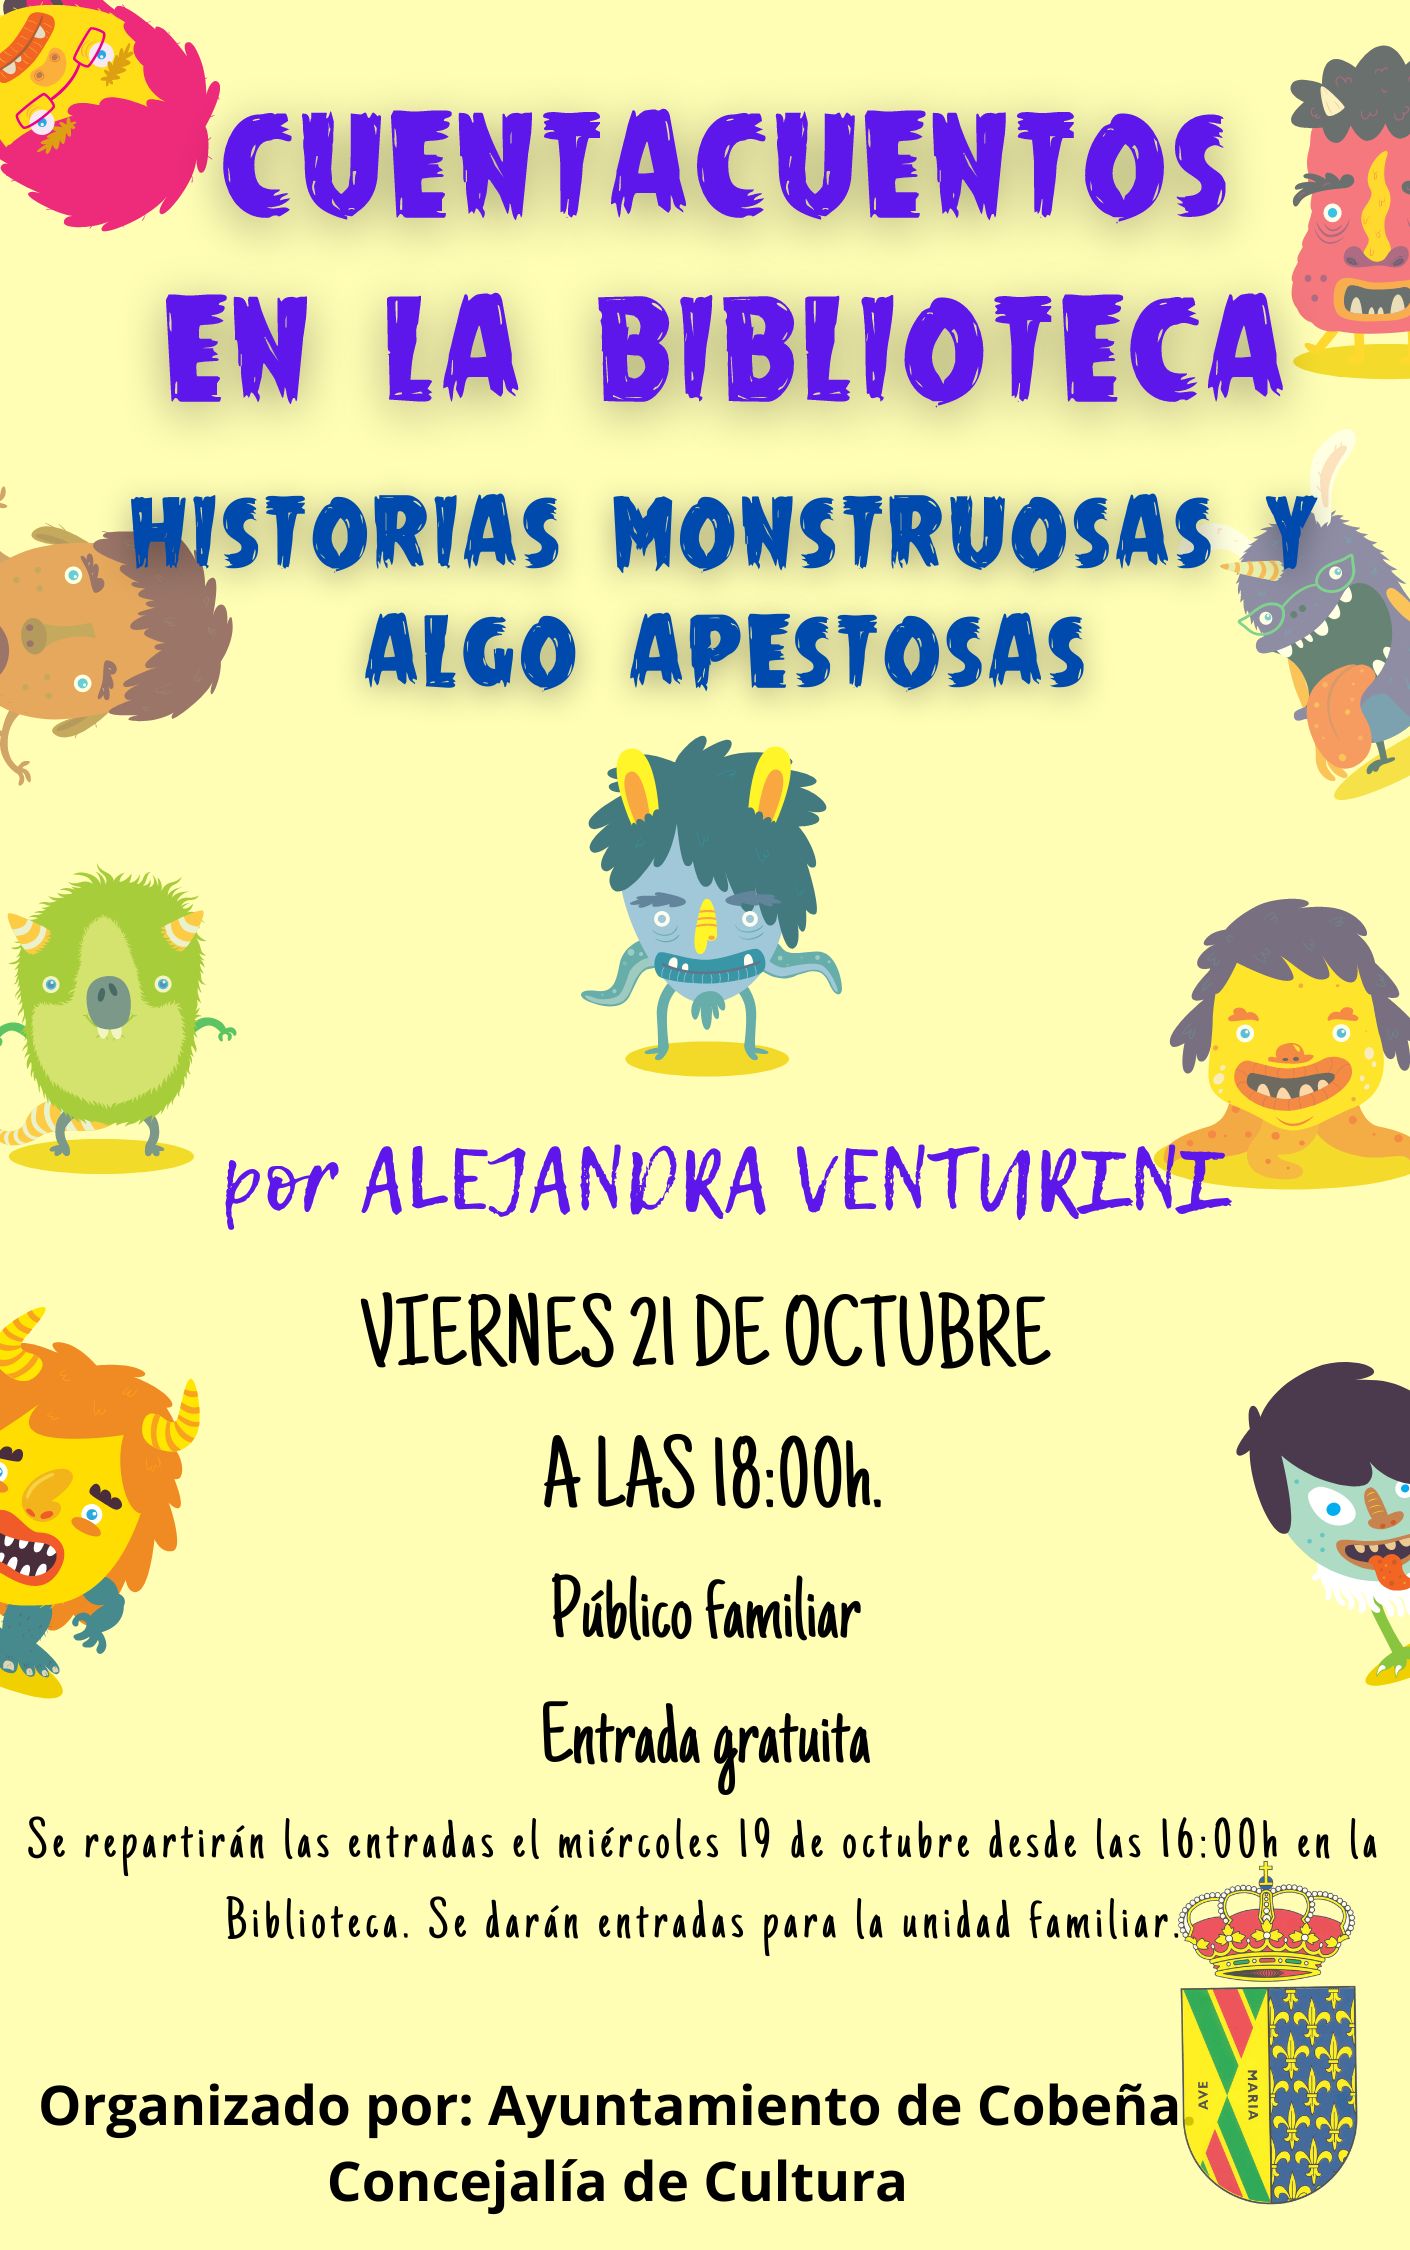 Cuentacuentos en la Biblioteca "Historias Monstruosas Algo Apestosas" | Octubre 2022